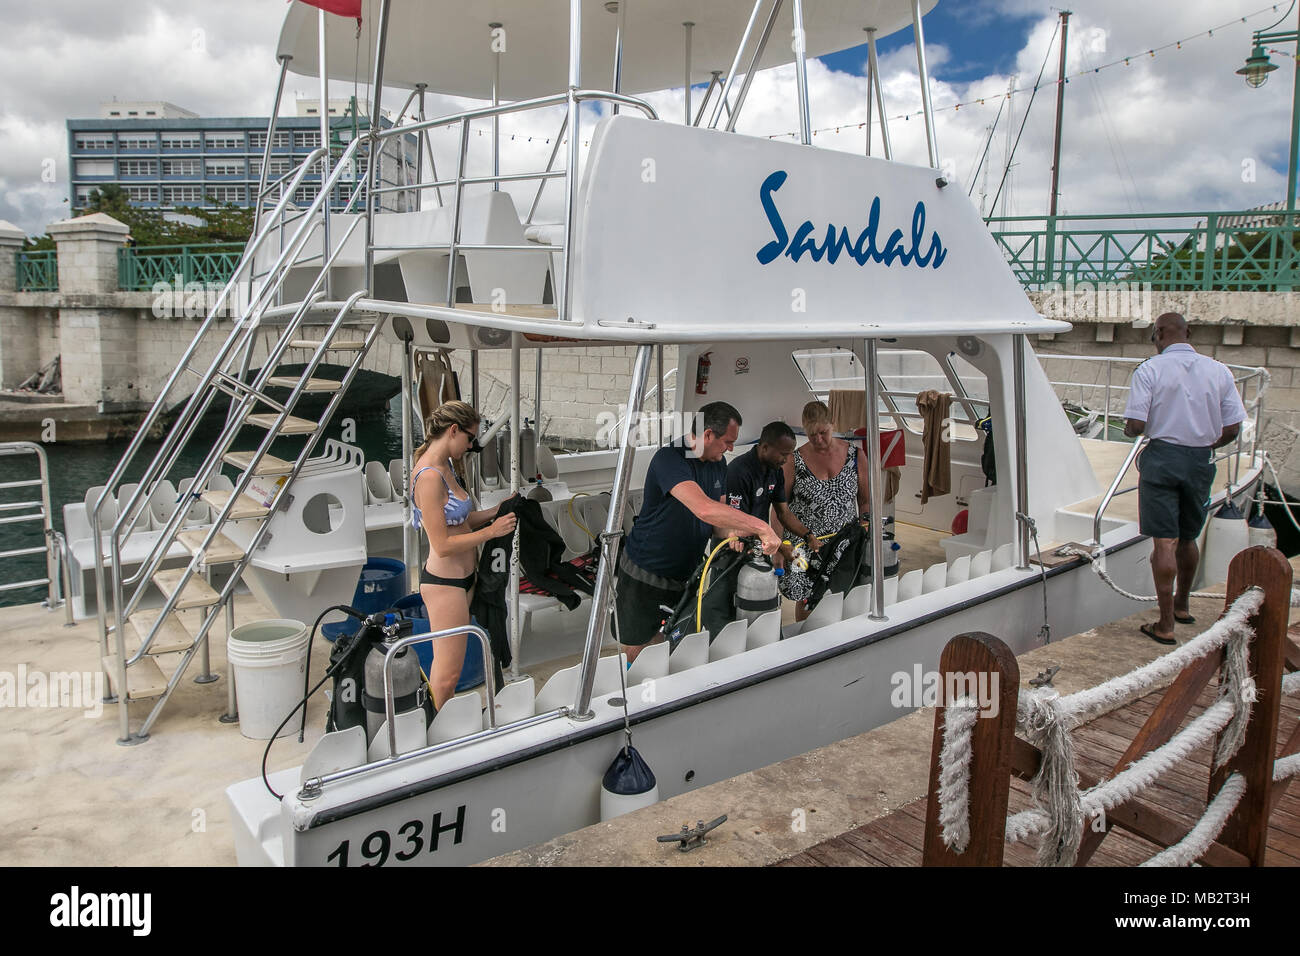 Le persone a bordo di una barca diving dal Sandals resort sono pronte. Bridgetown, Barbados. Foto Stock